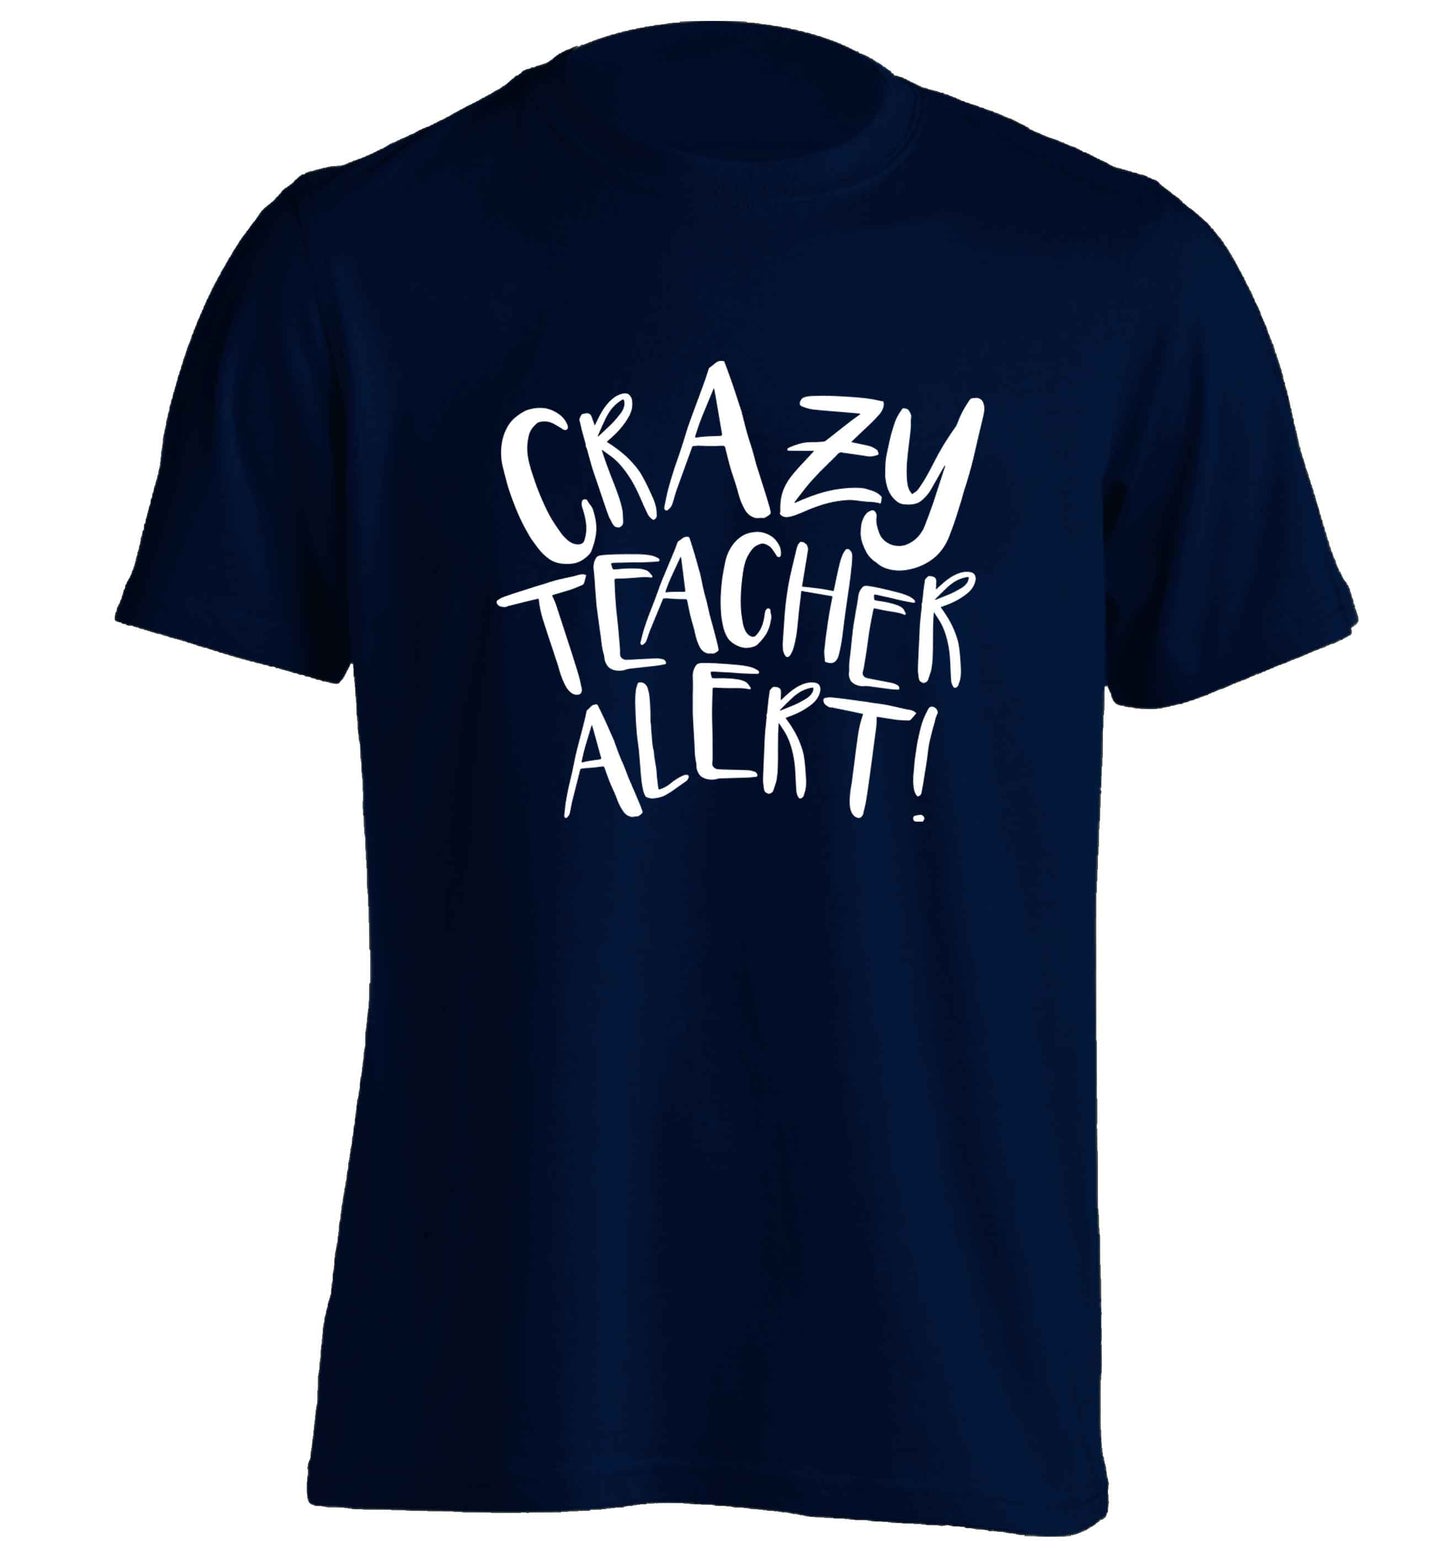 Crazy teacher alert adults unisex navy Tshirt 2XL